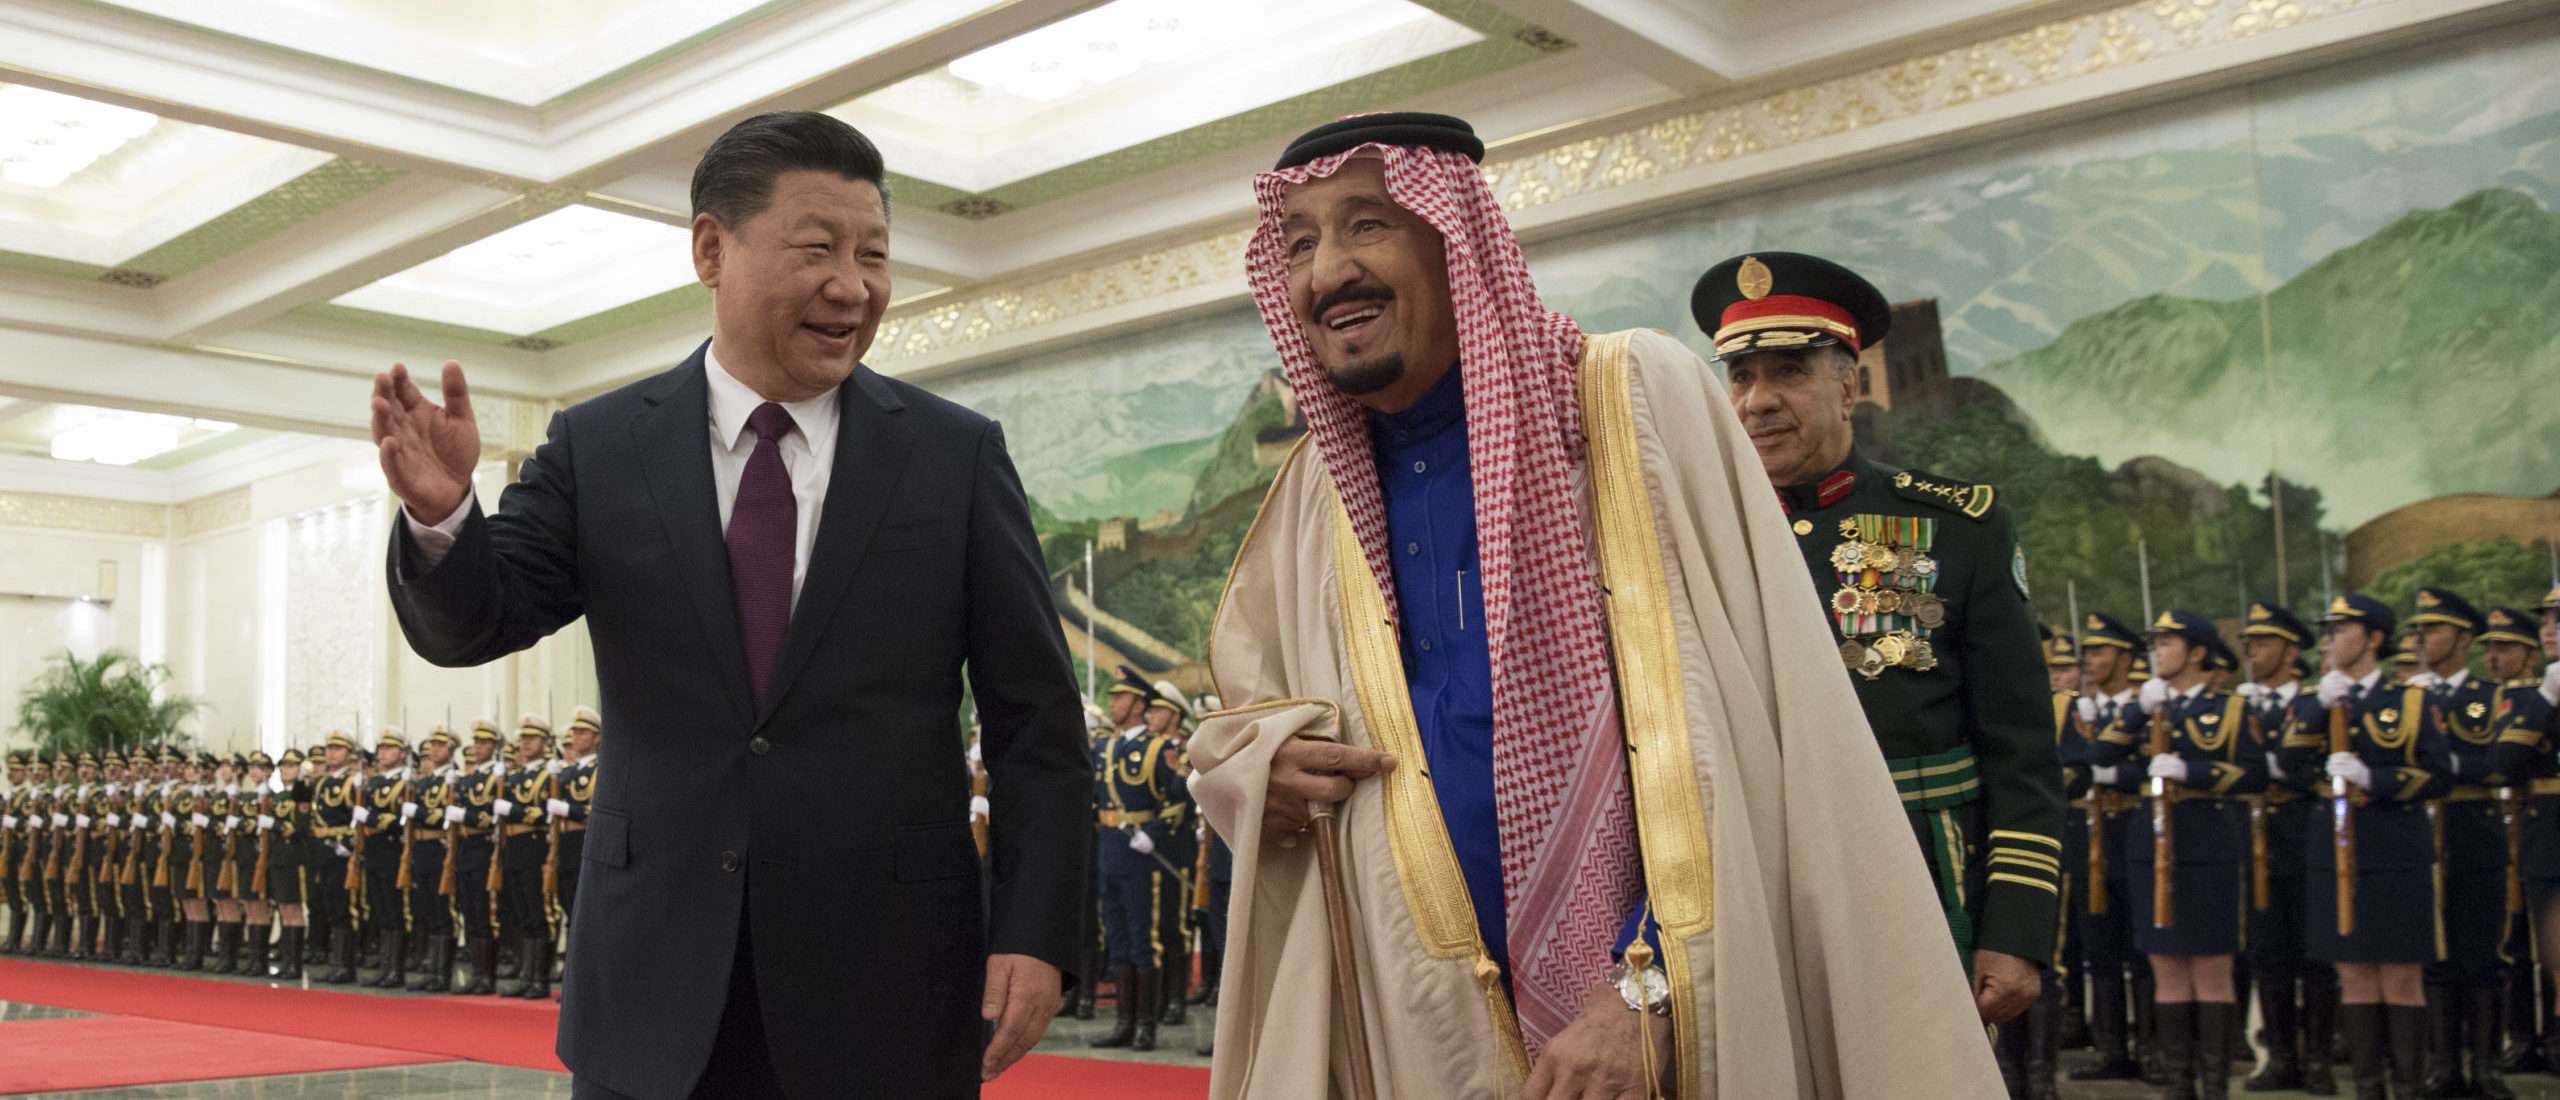 BEIJING, CHINA - MAART 16: De Chinese president Xi Jinping (L) vergezelt koning Salman bin Abdulaziz Al Saud (R) van Saoedi-Arabië om een ​​erewacht te bekijken tijdens een welkomstceremonie in de Grote Hal van het Volk op 16 maart 2017 in Peking, China.  Op uitnodiging van president Xi Jinping brengt koning Salman Bin Abdul-Aaziz Al-Saud van het Koninkrijk Saoedi-Arabië van 15 tot 18 maart 2017 een staatsbezoek aan China.